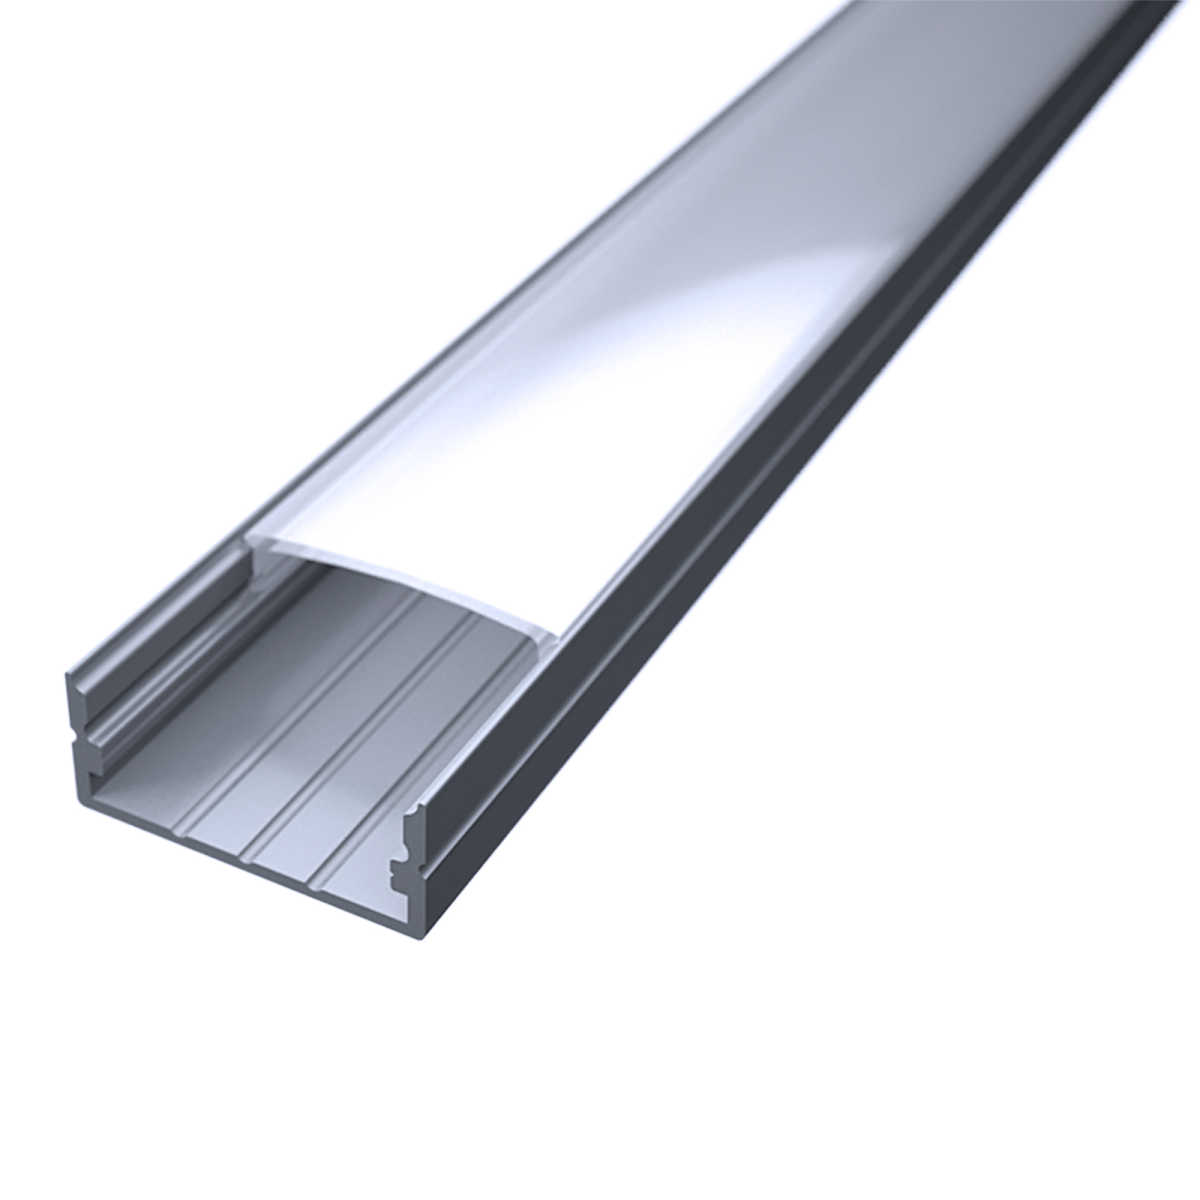 LED Flachprofil "Slim-Line max" | Abdeckung diffus | Zuschnitt auf 91cm |